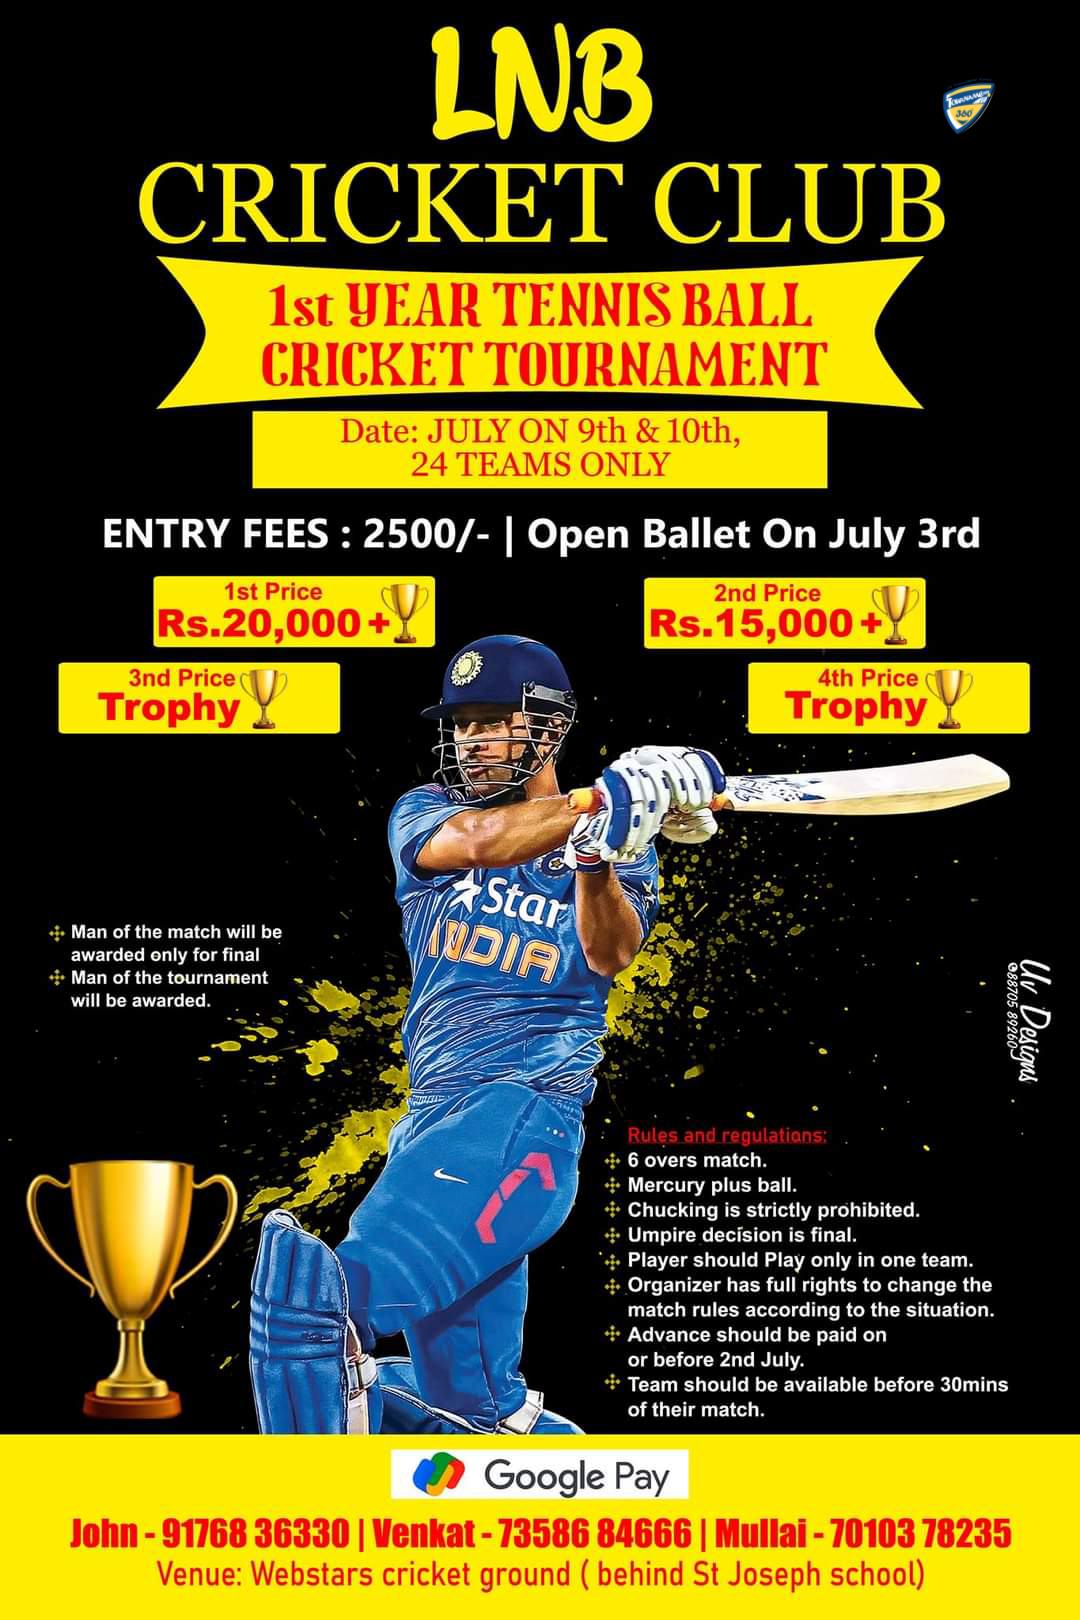 1st Year Tennis Ball Cricket Tournament in Chennai